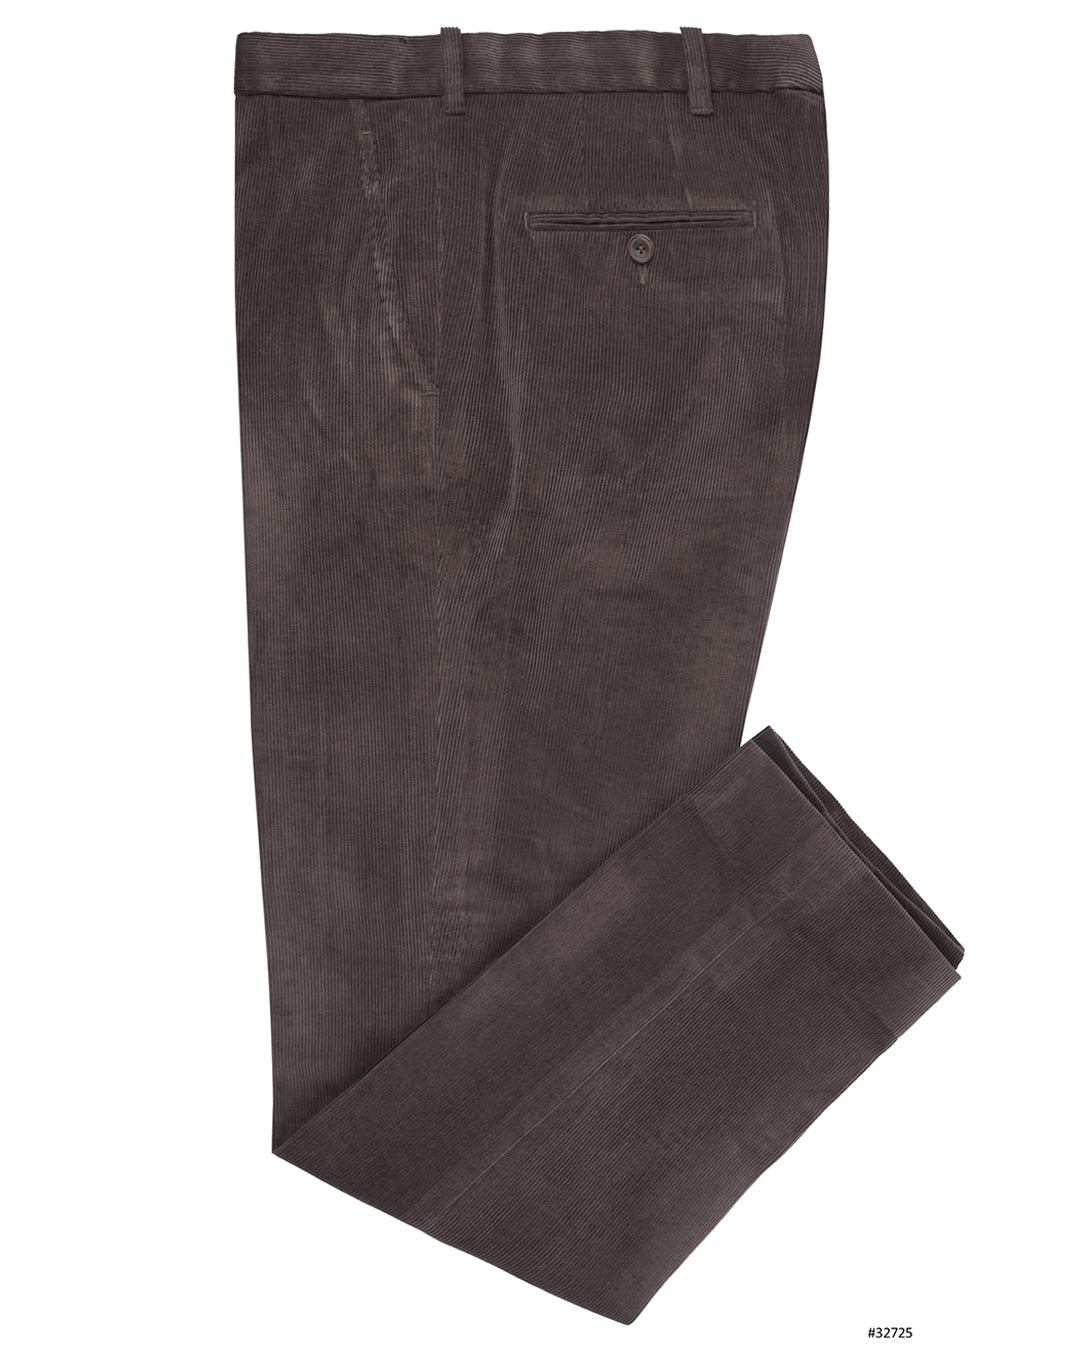 12.5 oz 8 Wale Corduroy Trousers - Black, Suit Pants Style